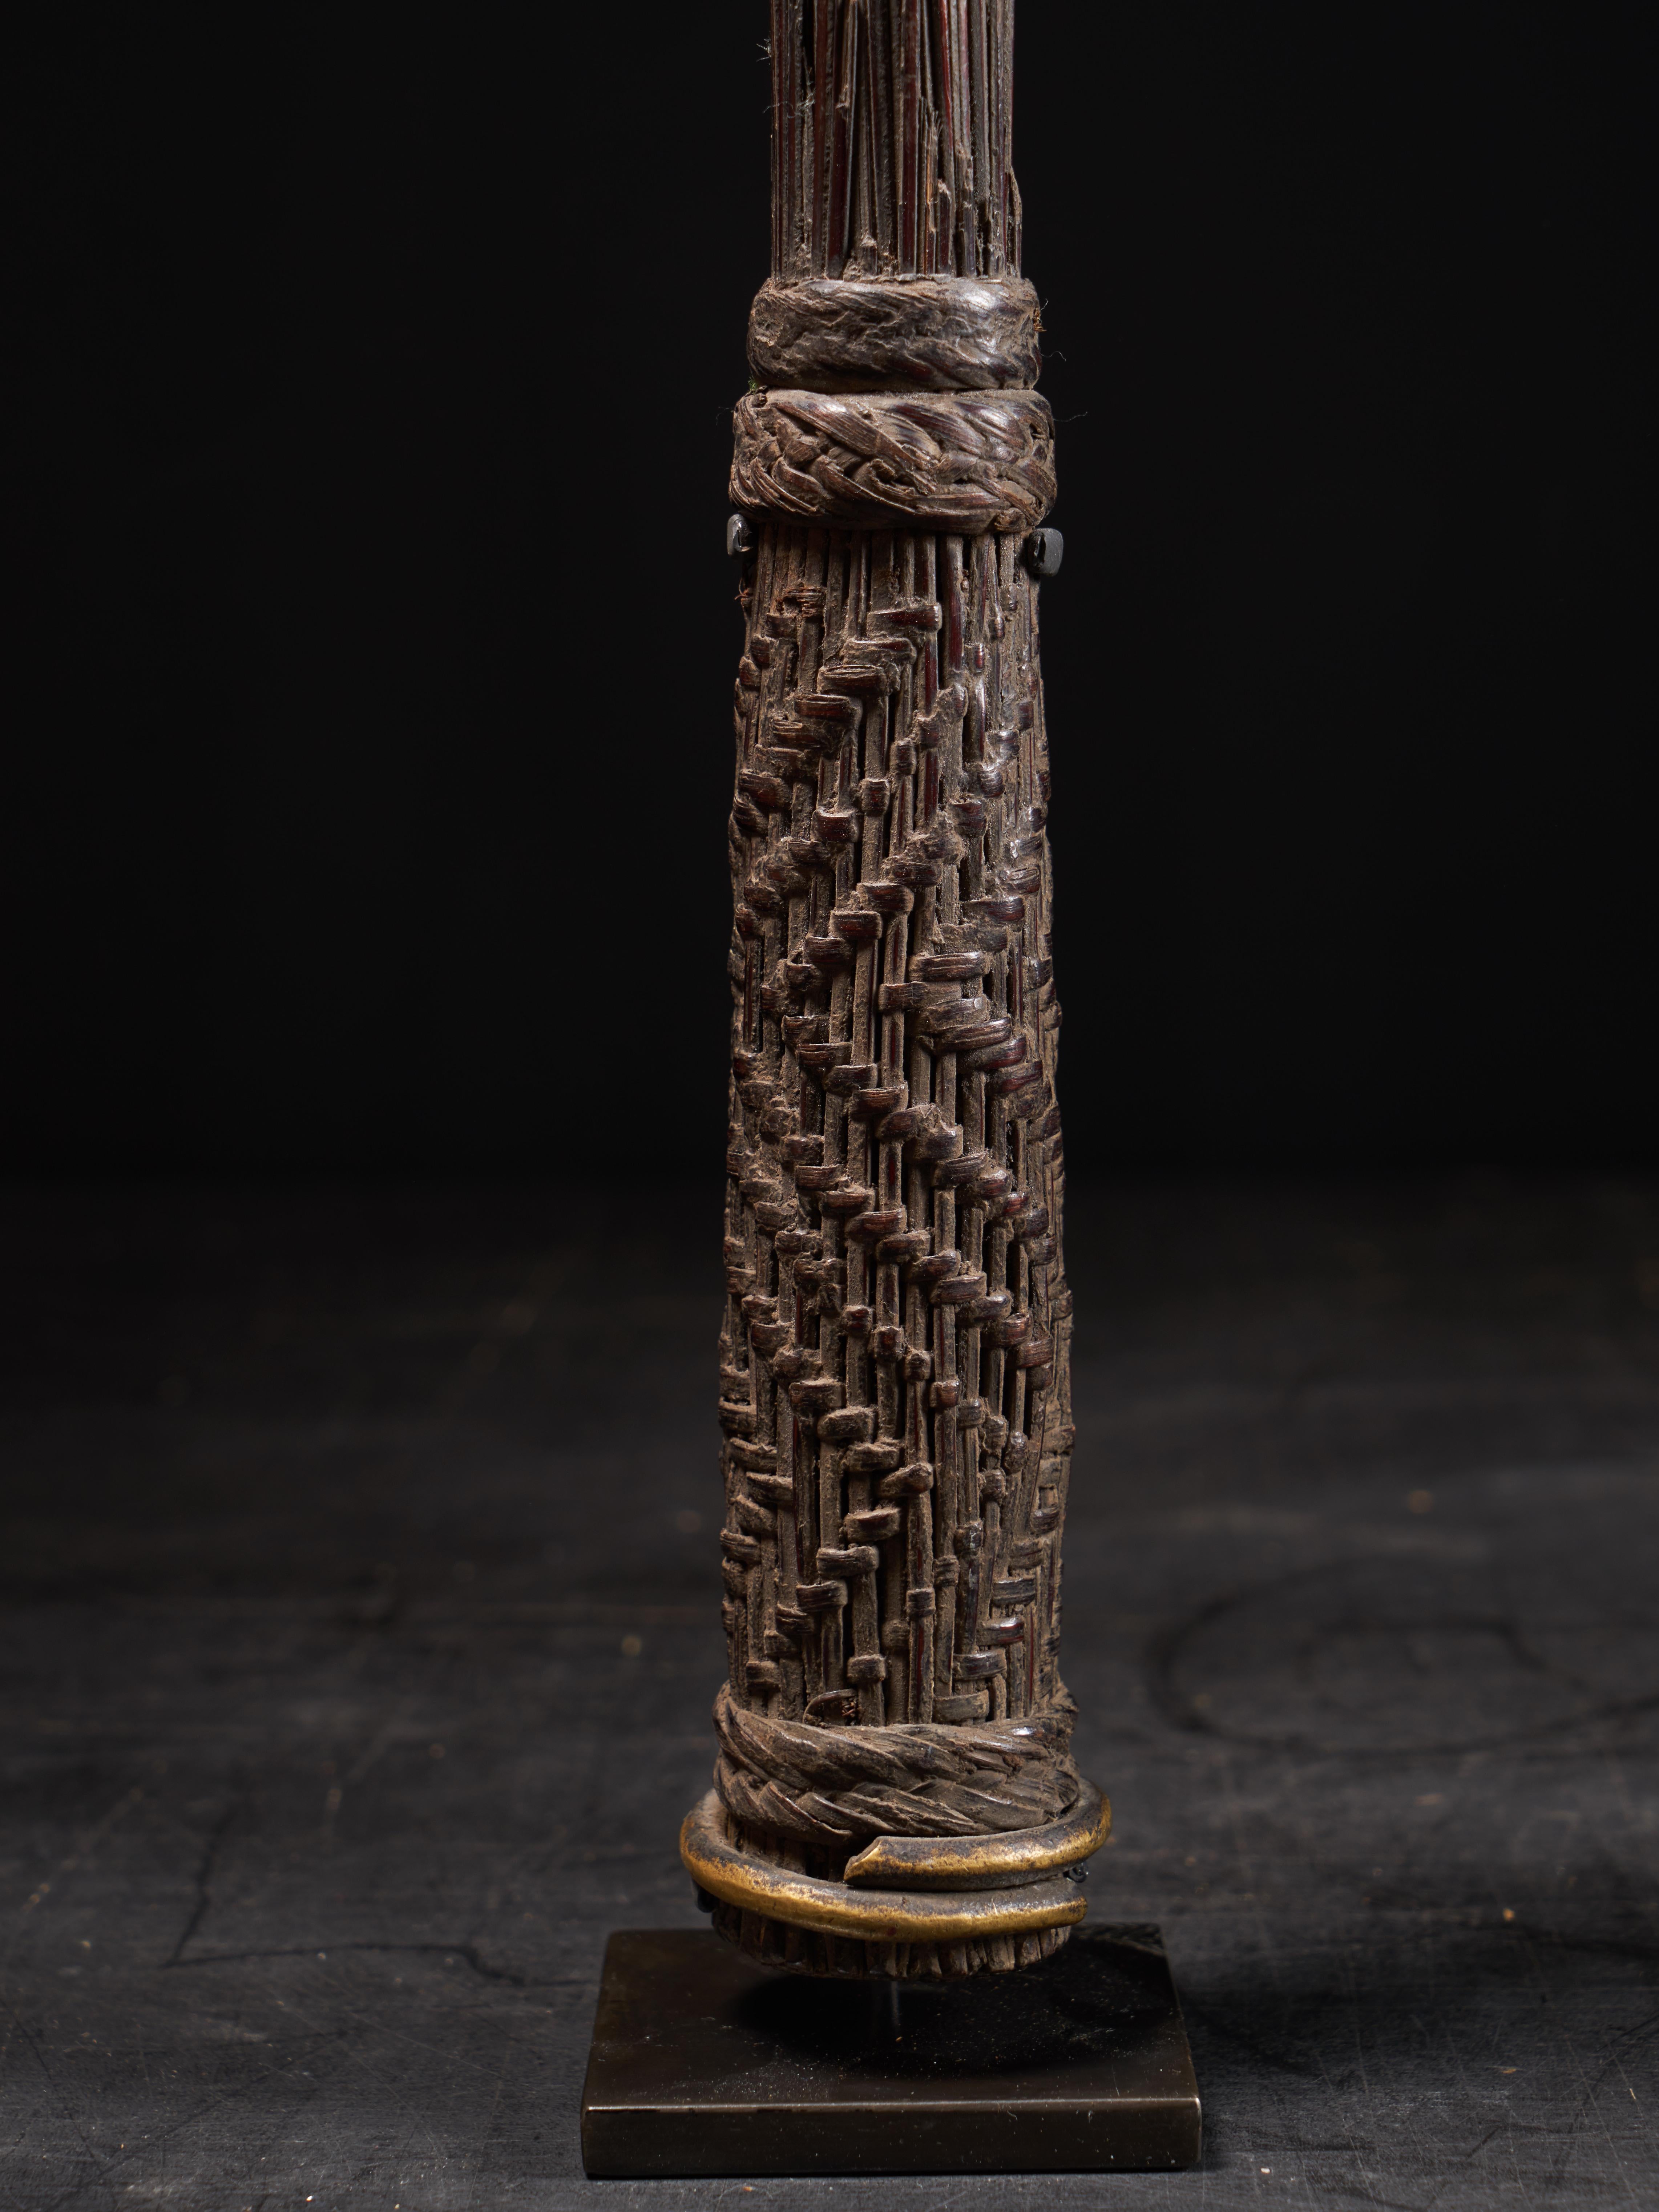 Die Zepter werden aus der Mittelrippe von Palmblättern hergestellt. Sie wurden von den Mitgliedern des Lilwaa-Geheimbundes des Mbole-Stammes verwendet, der im südwestlichen Teil des Kongo lebt. Die Verarbeitung ist sehr minimalistisch und raffiniert.